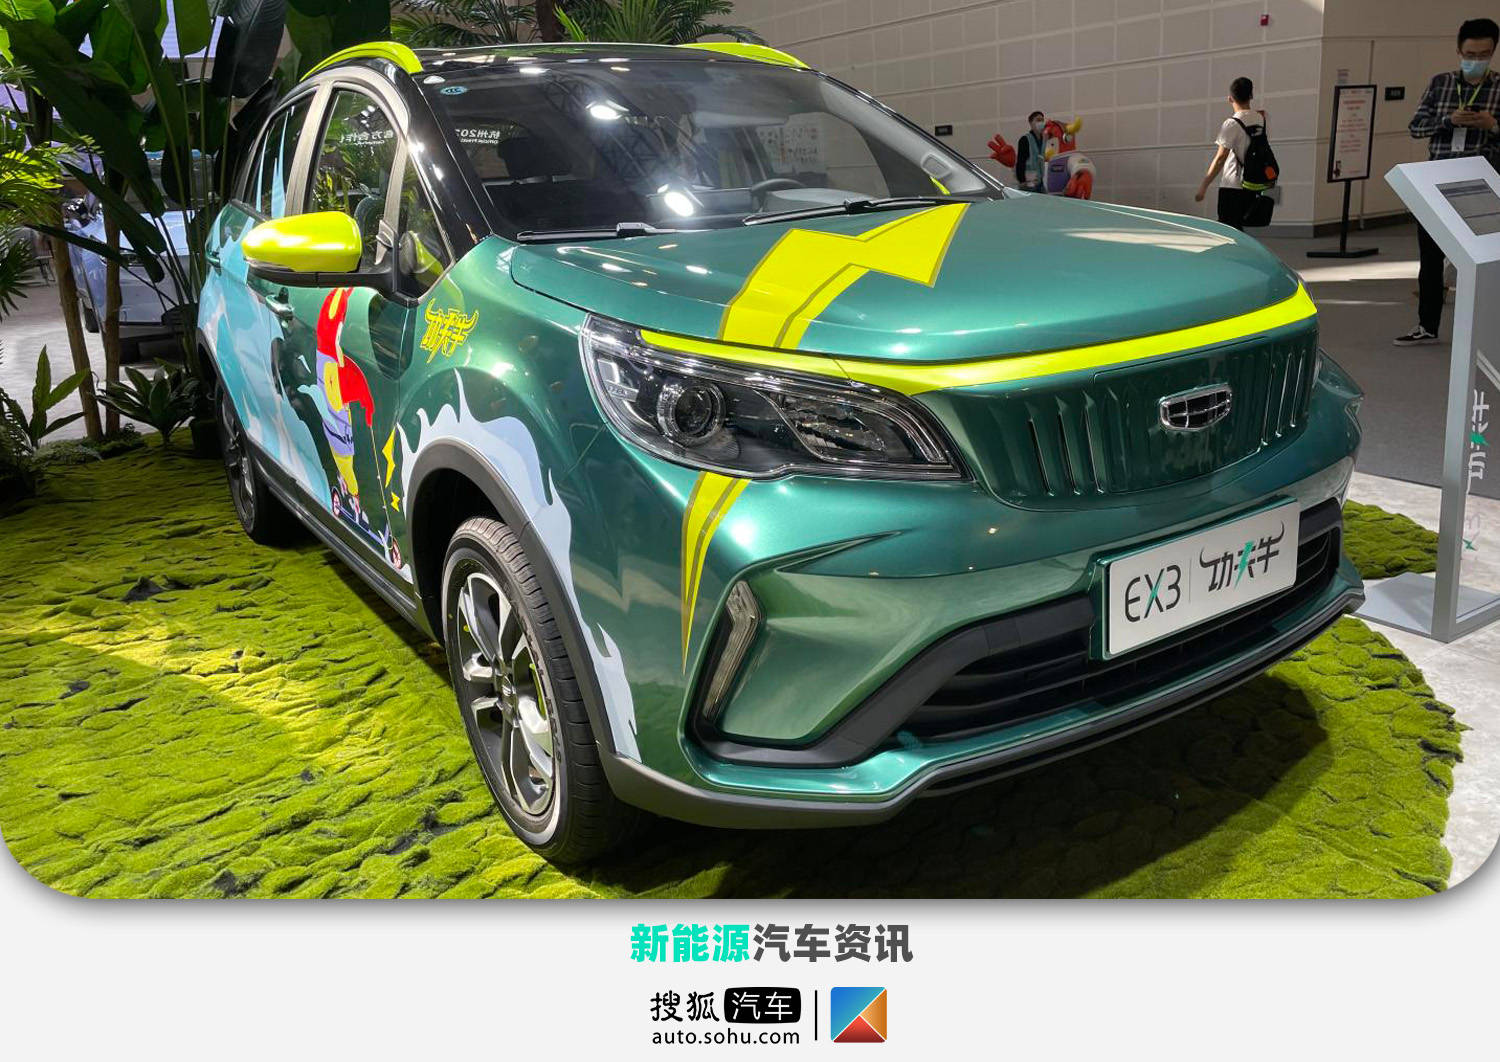 2021天津车展:预售价格597万元起 ex3 功夫牛亮相